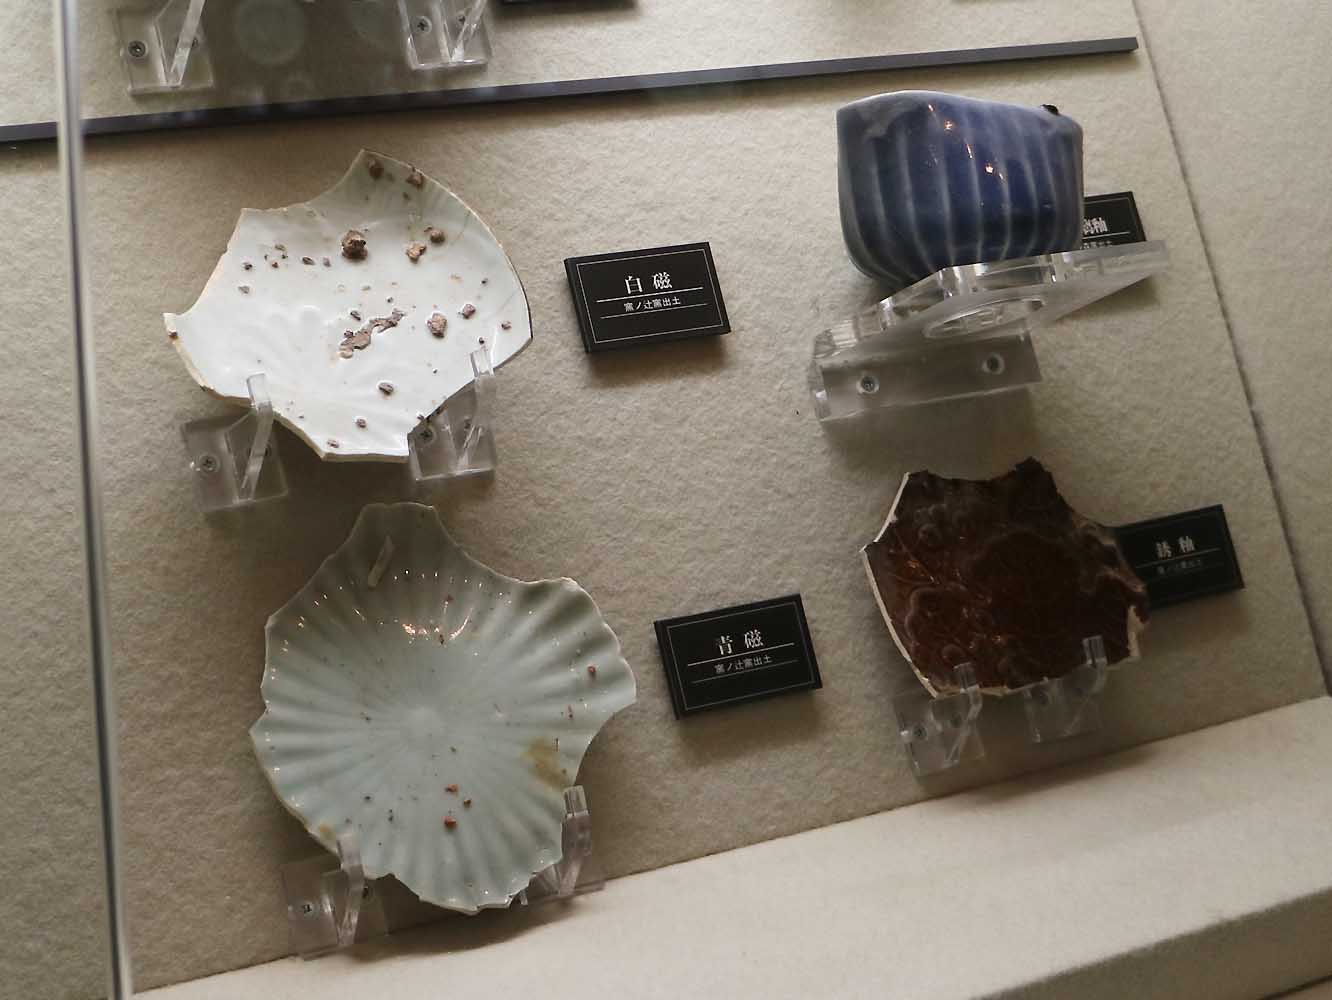 磁器の生産を試みた初期の失敗作。焼成後に釜の脇に捨てられたものが遺跡の調査で出土しました。形が不安定であった、り割れてしまったり、表面に凹凸があったりと課題が多くありました (「佐賀県立九州陶磁文化館」展示) 